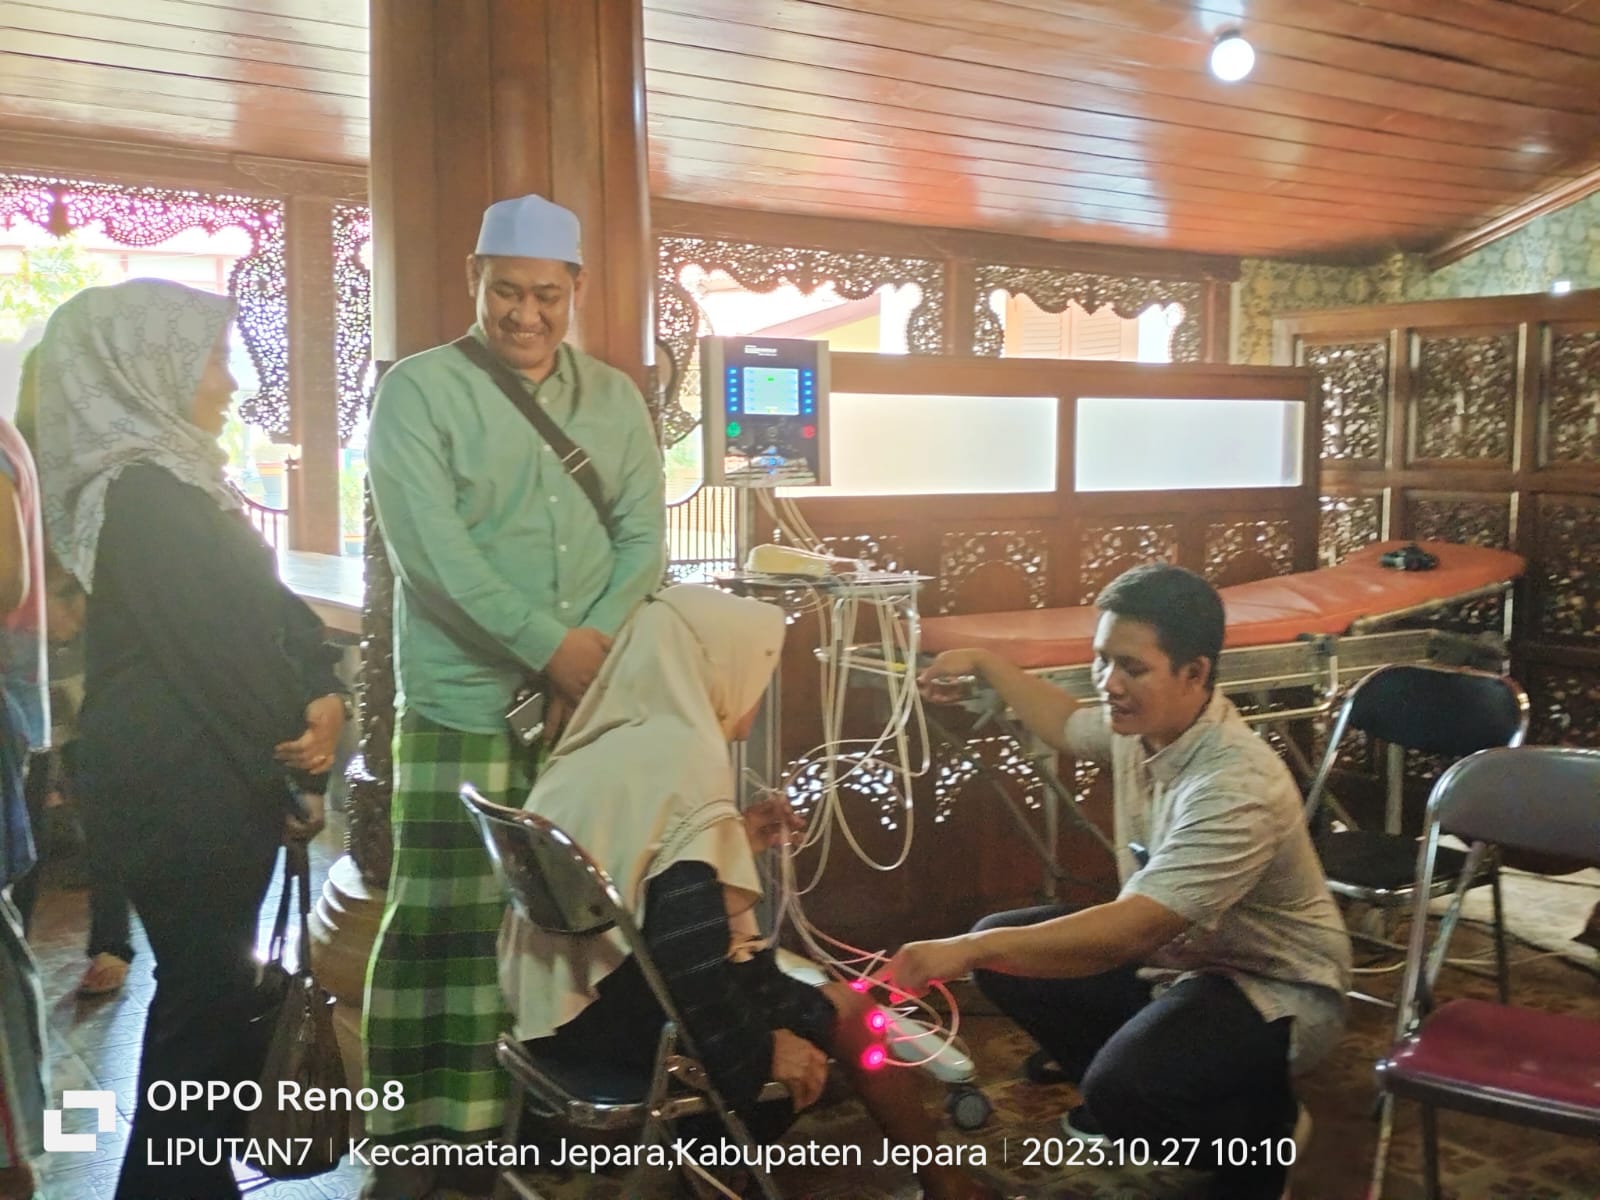 Jamaludin Malik tokoh pemuda Desa Mayong Kabupaten Jepara, mengapresiasi saat mengunjungi kegiatan kemanusiaan dalam bakti sosial pengobatan gratis gangguan saraf yang diselenggarakan di Pendopo Kabupaten Jepara. Jum'at (27/10/2023) pagi.